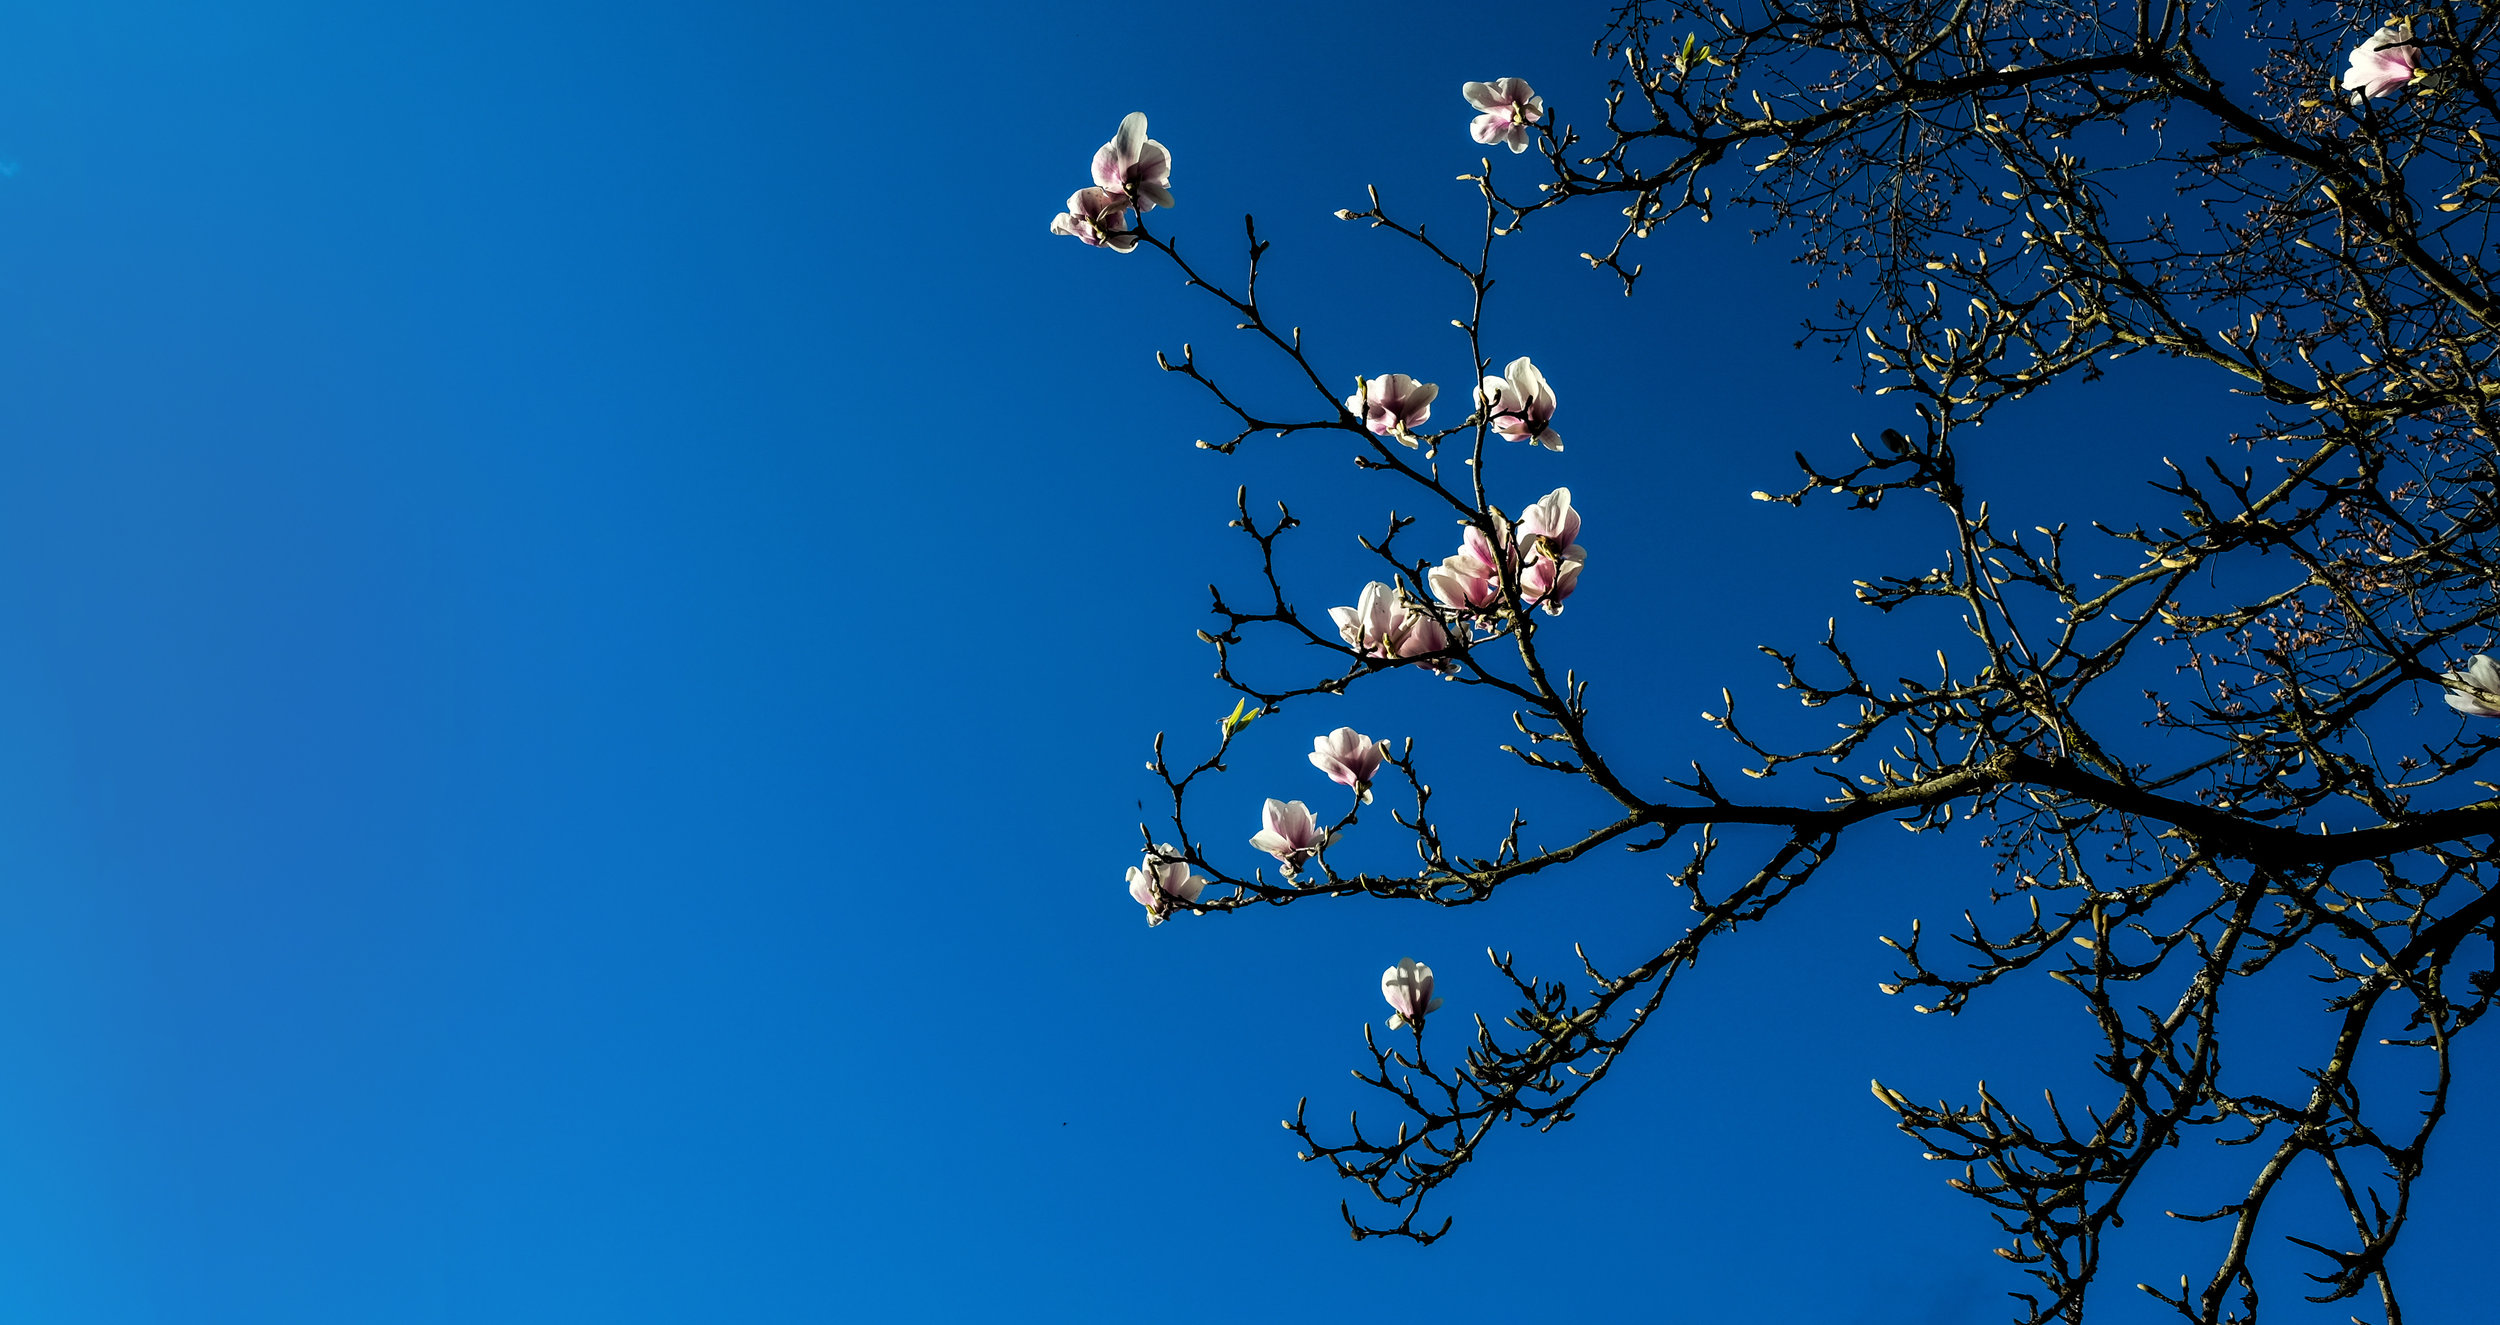 Berg-21-Apr-2017-16-51-09 Magnolia, Blossoms, Flowers, Sky, Blue.jpg